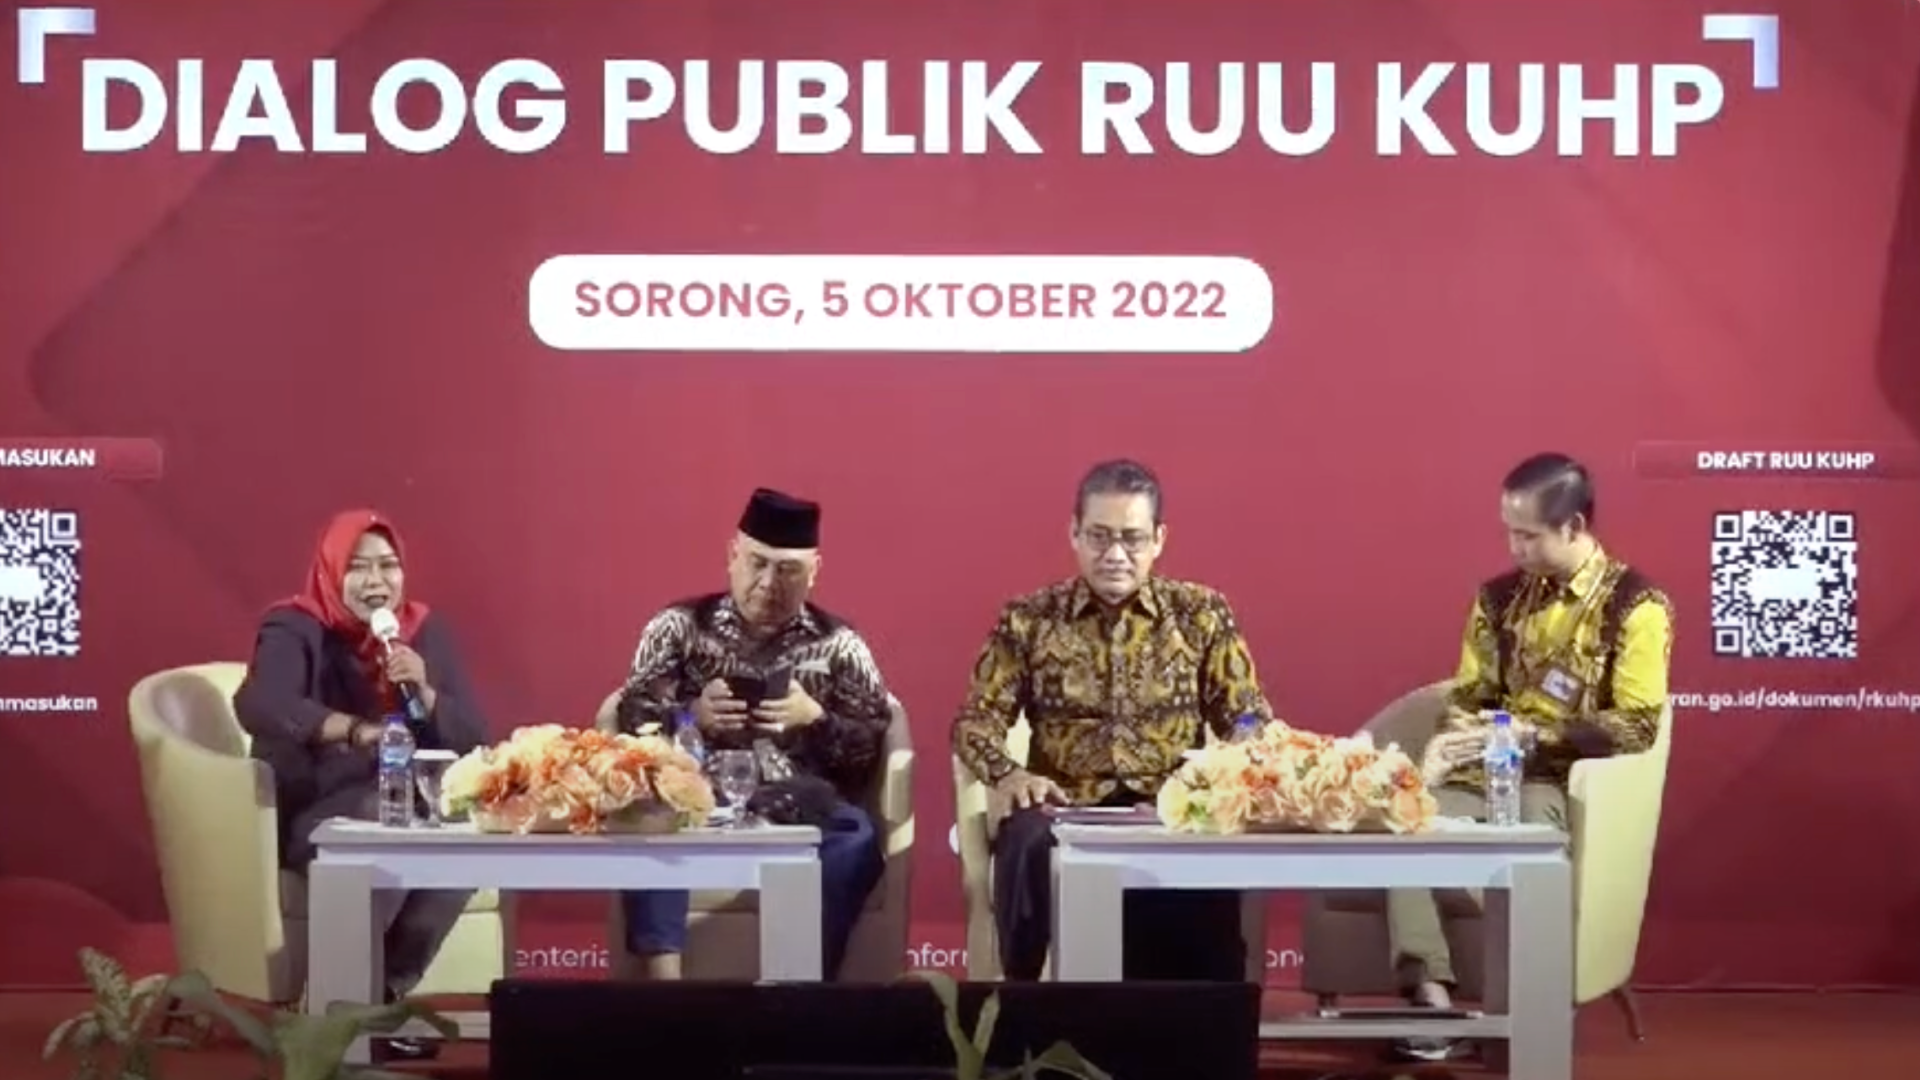 Dialog Publik RUU KUHP di Sorong, 5 Oktober 2022. Foto: istimewa.